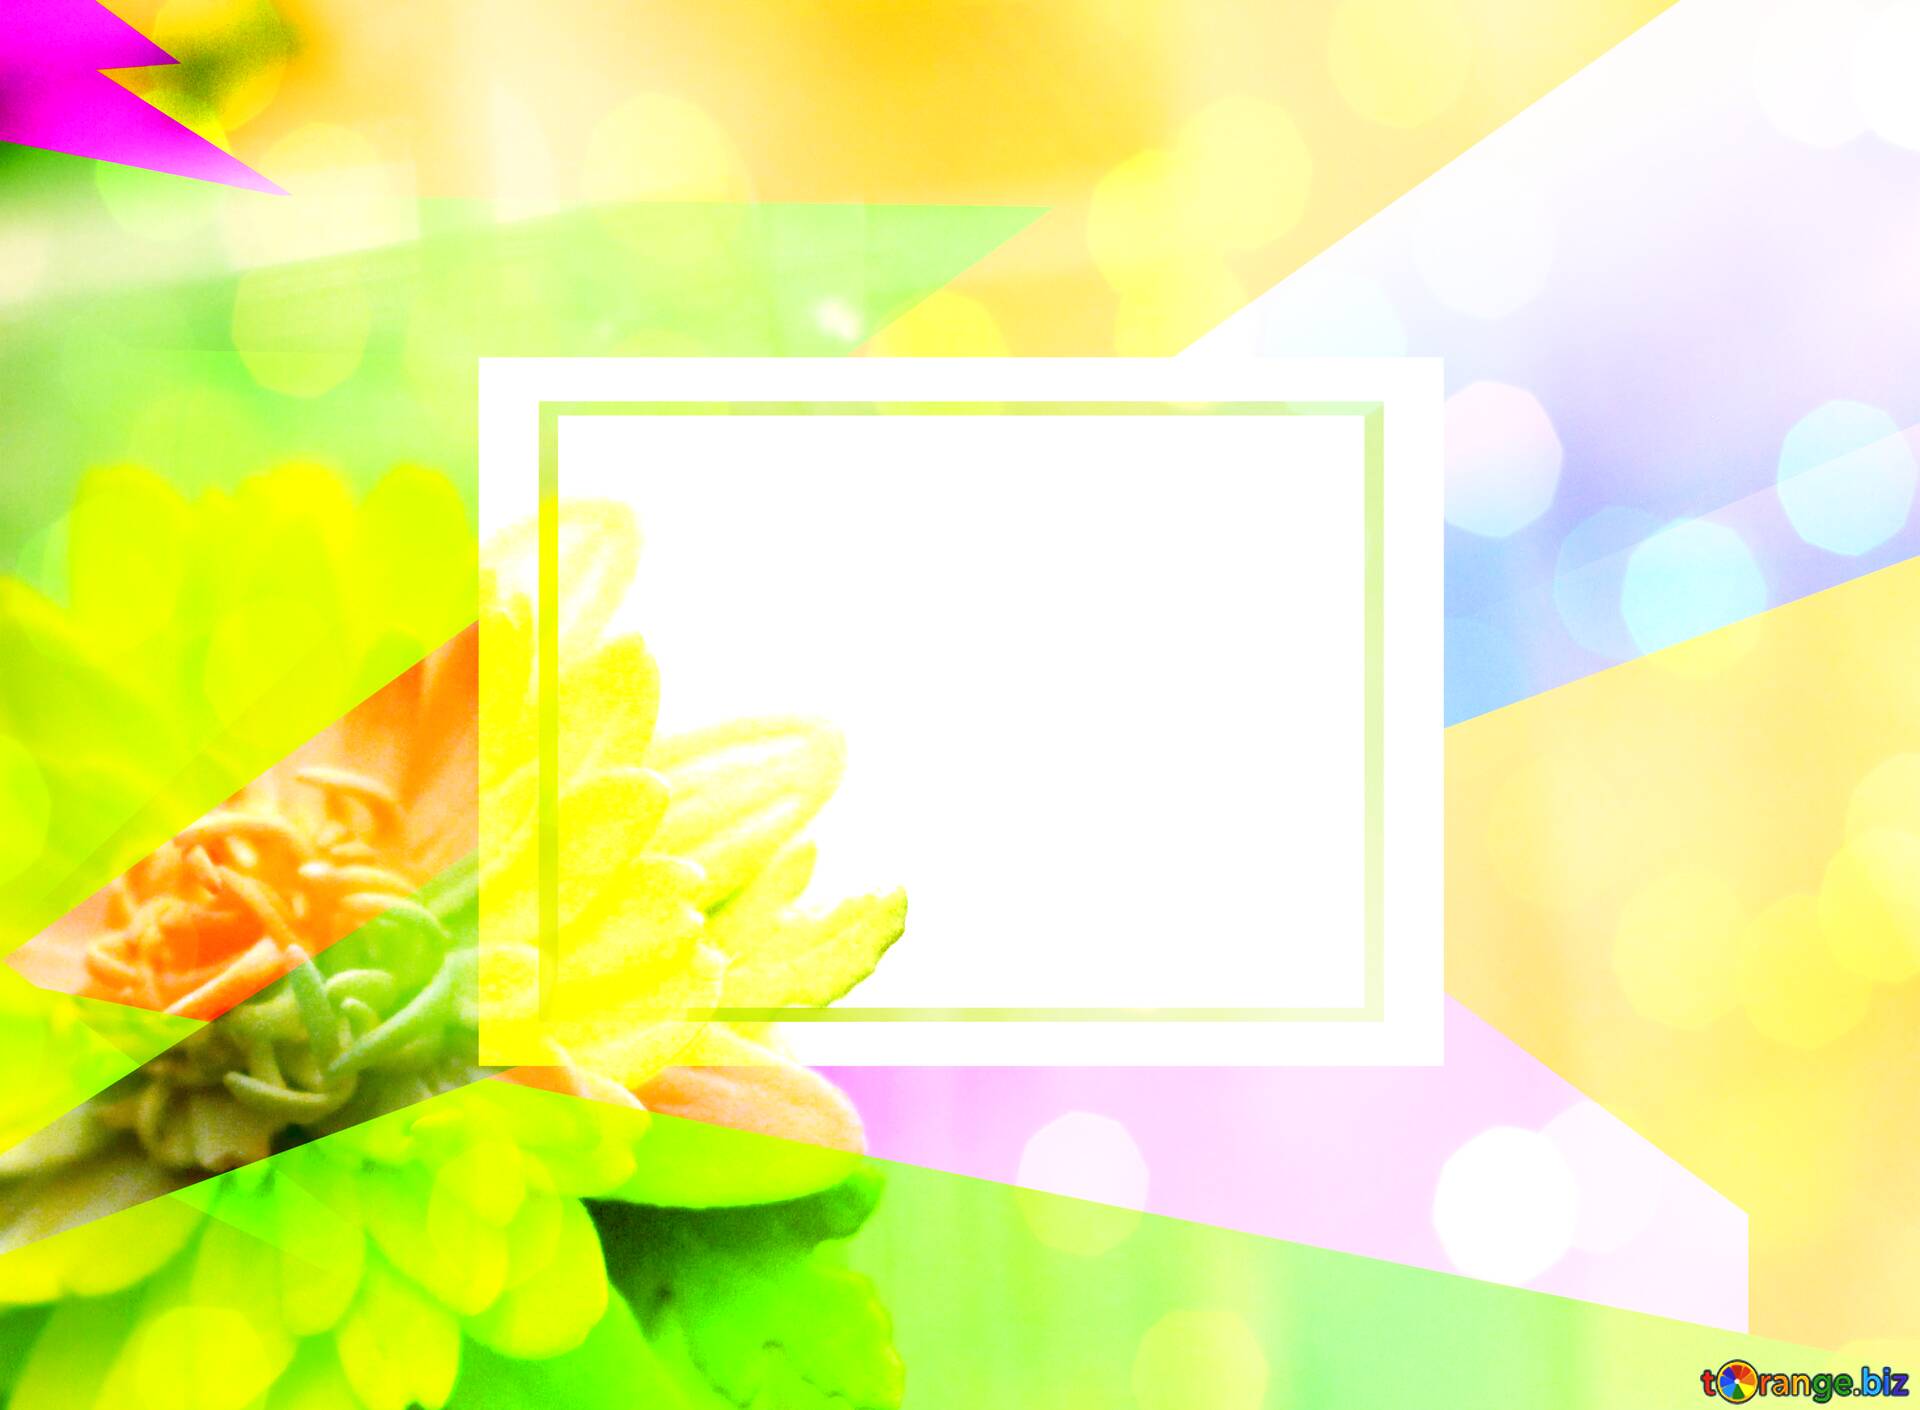 Những đóa hoa màu vàng sáng rực trên nền trắng tinh khiết sẽ mang đến cho bạn cảm giác sảng khoái và đầy năng lượng.